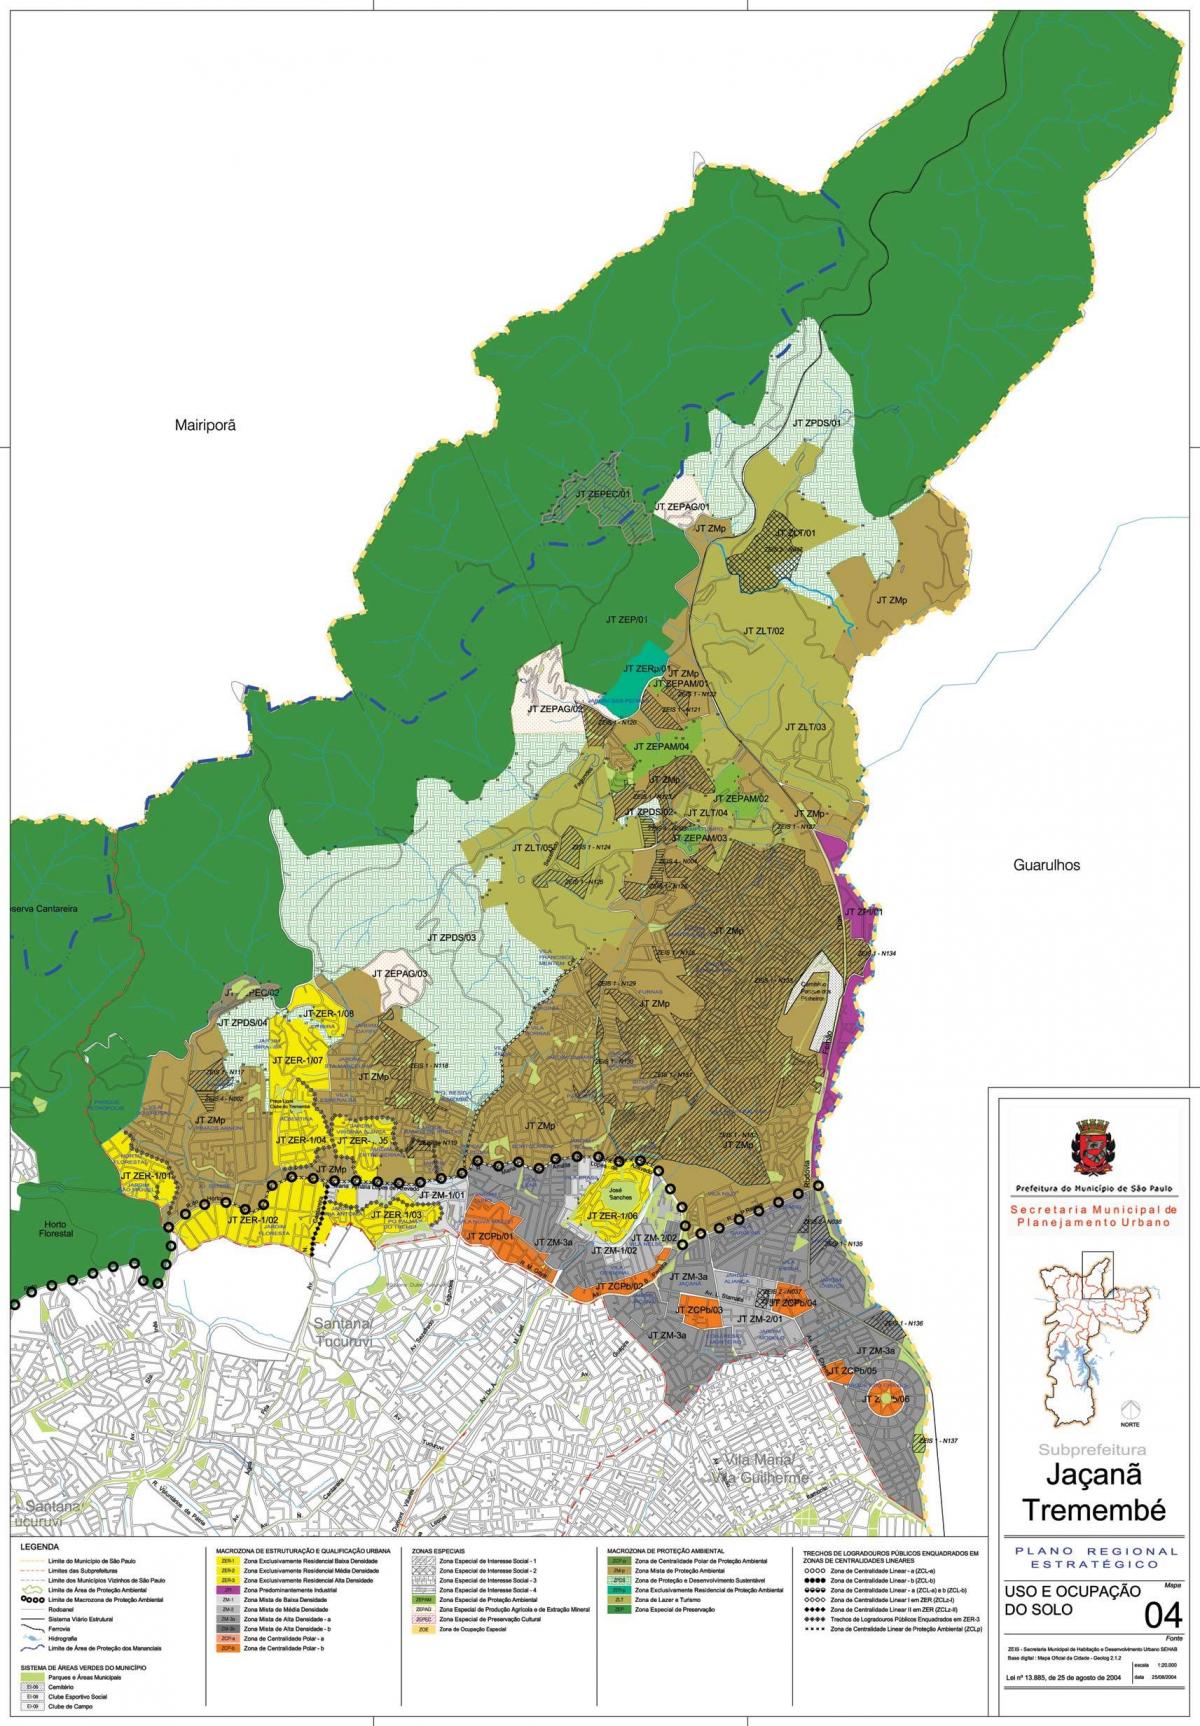 Peta dari Jaçanã-Tremembé Sao Paulo - Pendudukan tanah